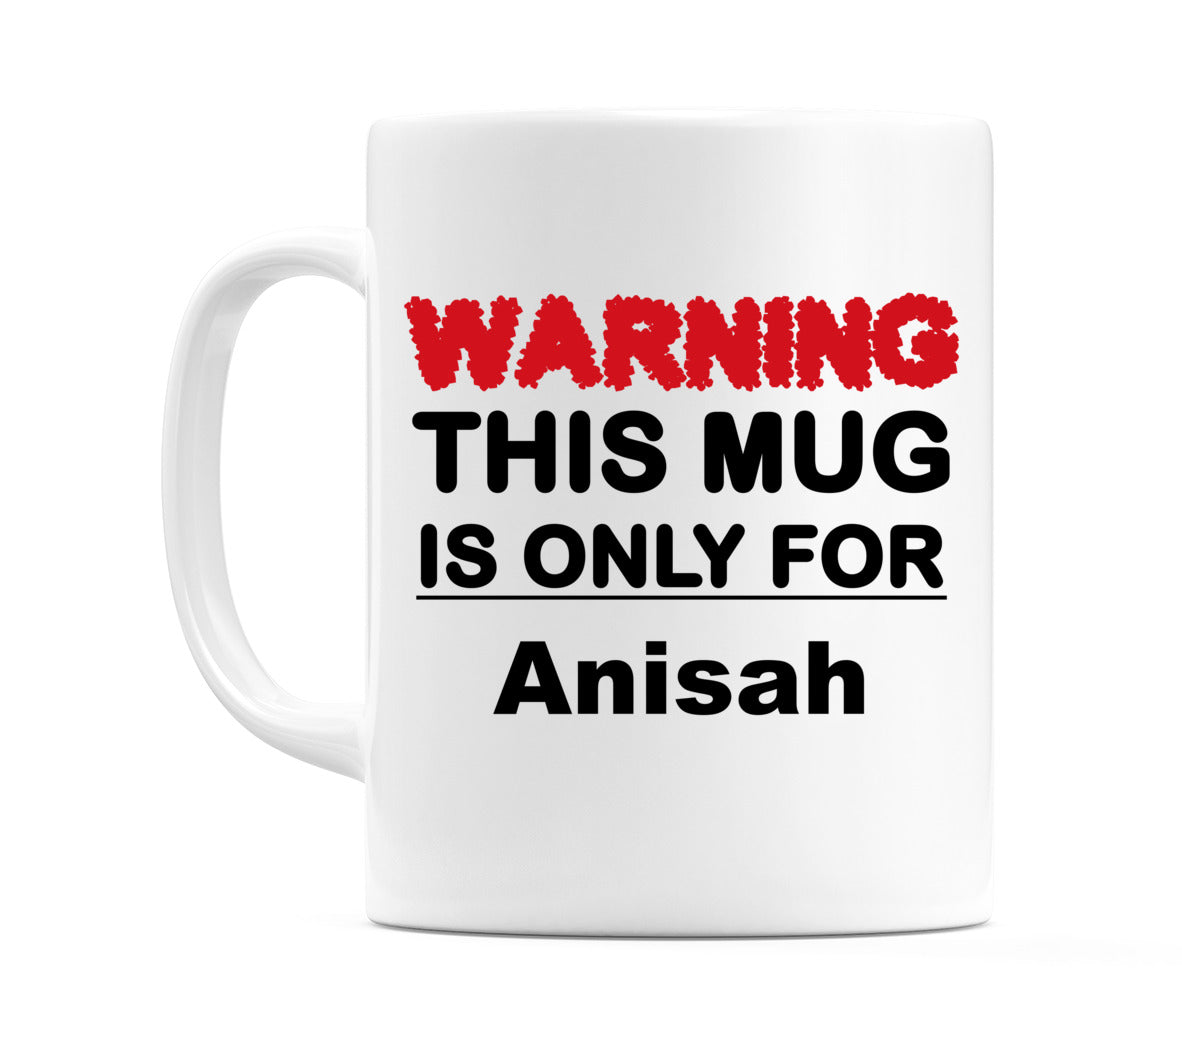 Warning This Mug is ONLY for Anisah Mug